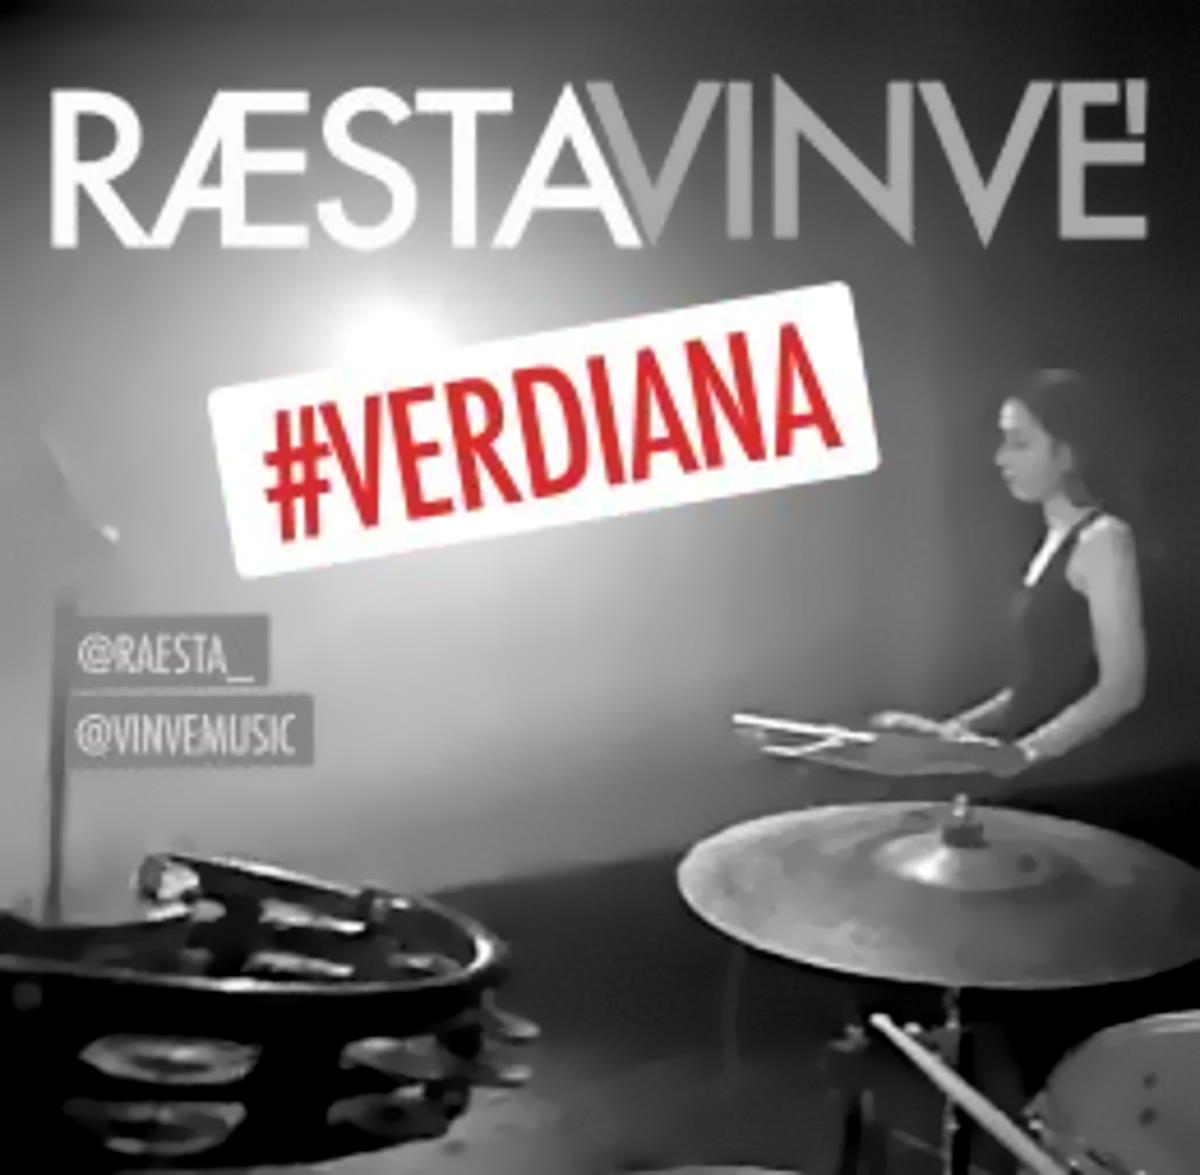 RÆSTAVINVE, “Verdiana” è il nuovo singolo dalle sonorità dream pop estratto dall’album Biancalancia del duo pugliese